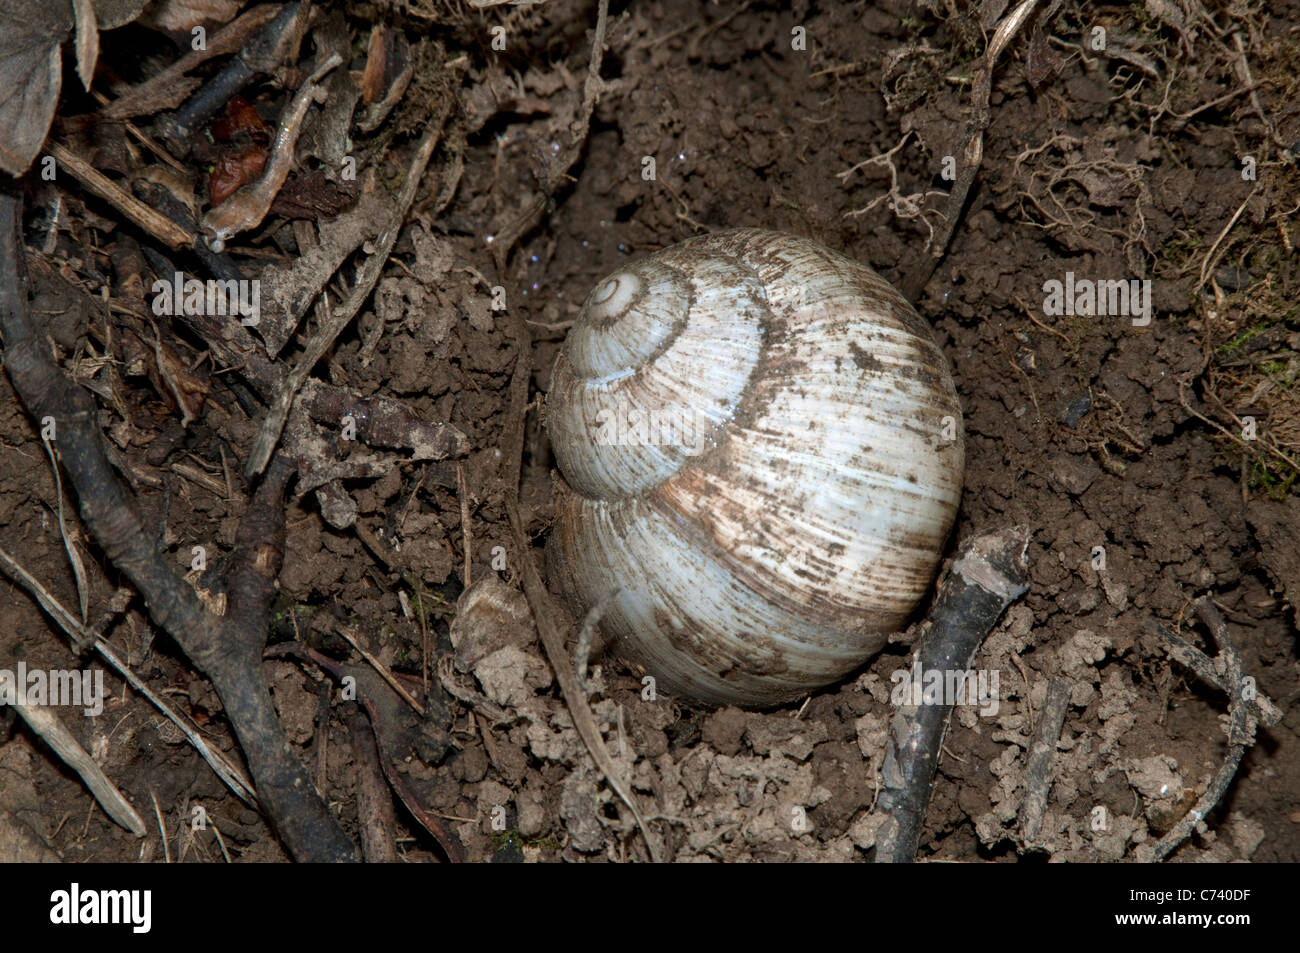 Escargot romain, les escargots escargot, escargots (Helix pomatia) creuser un trou pour y pondre ses oeufs. Banque D'Images